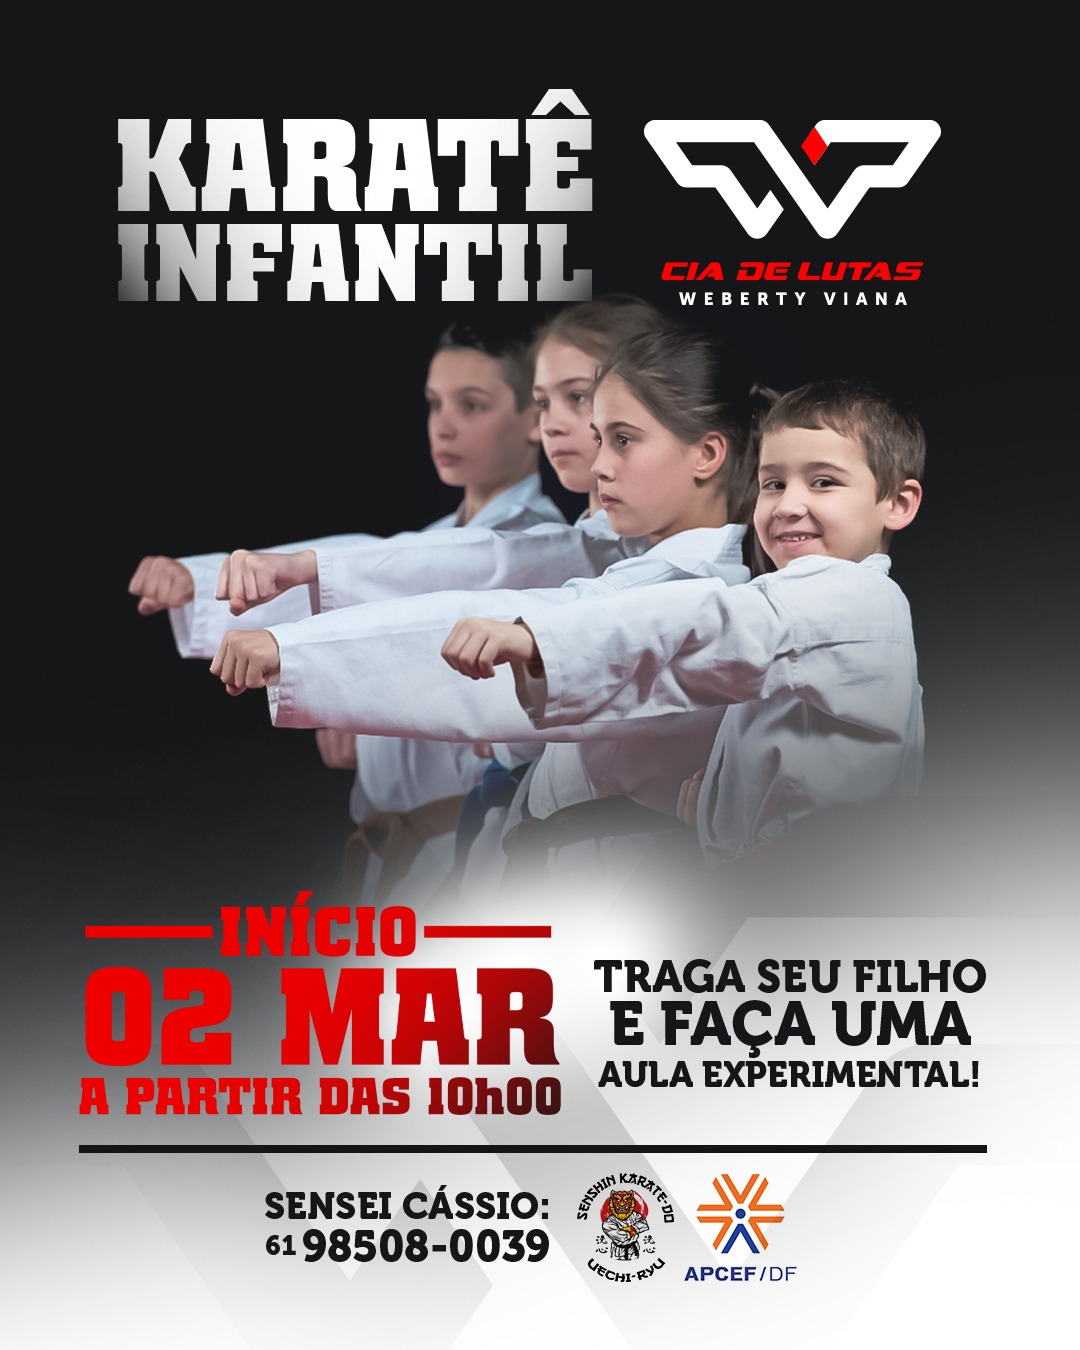 karate1.jpg